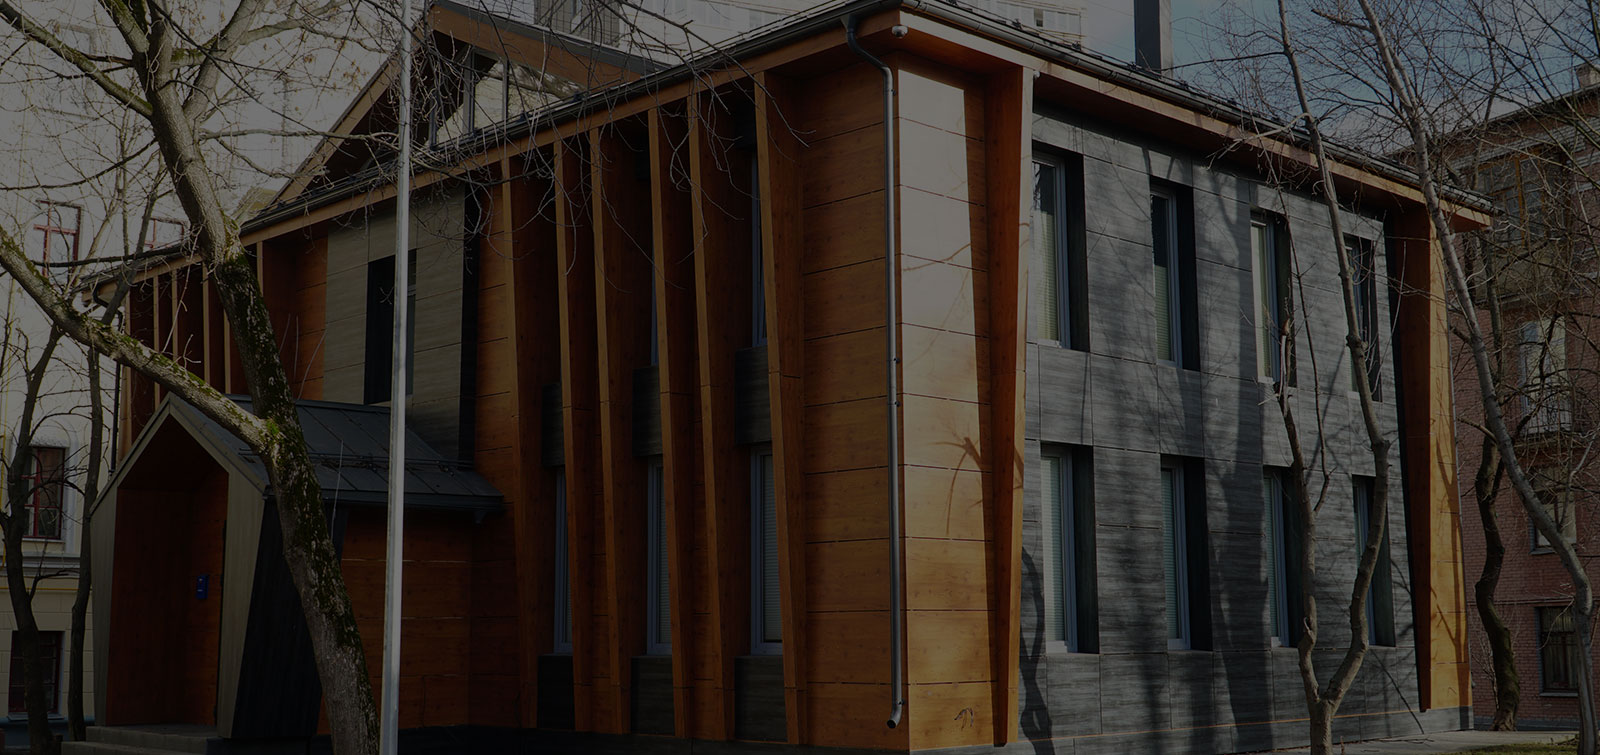 Идеи дизайна интерьера деревянного дома из бруса, фото с примерами - North Forest